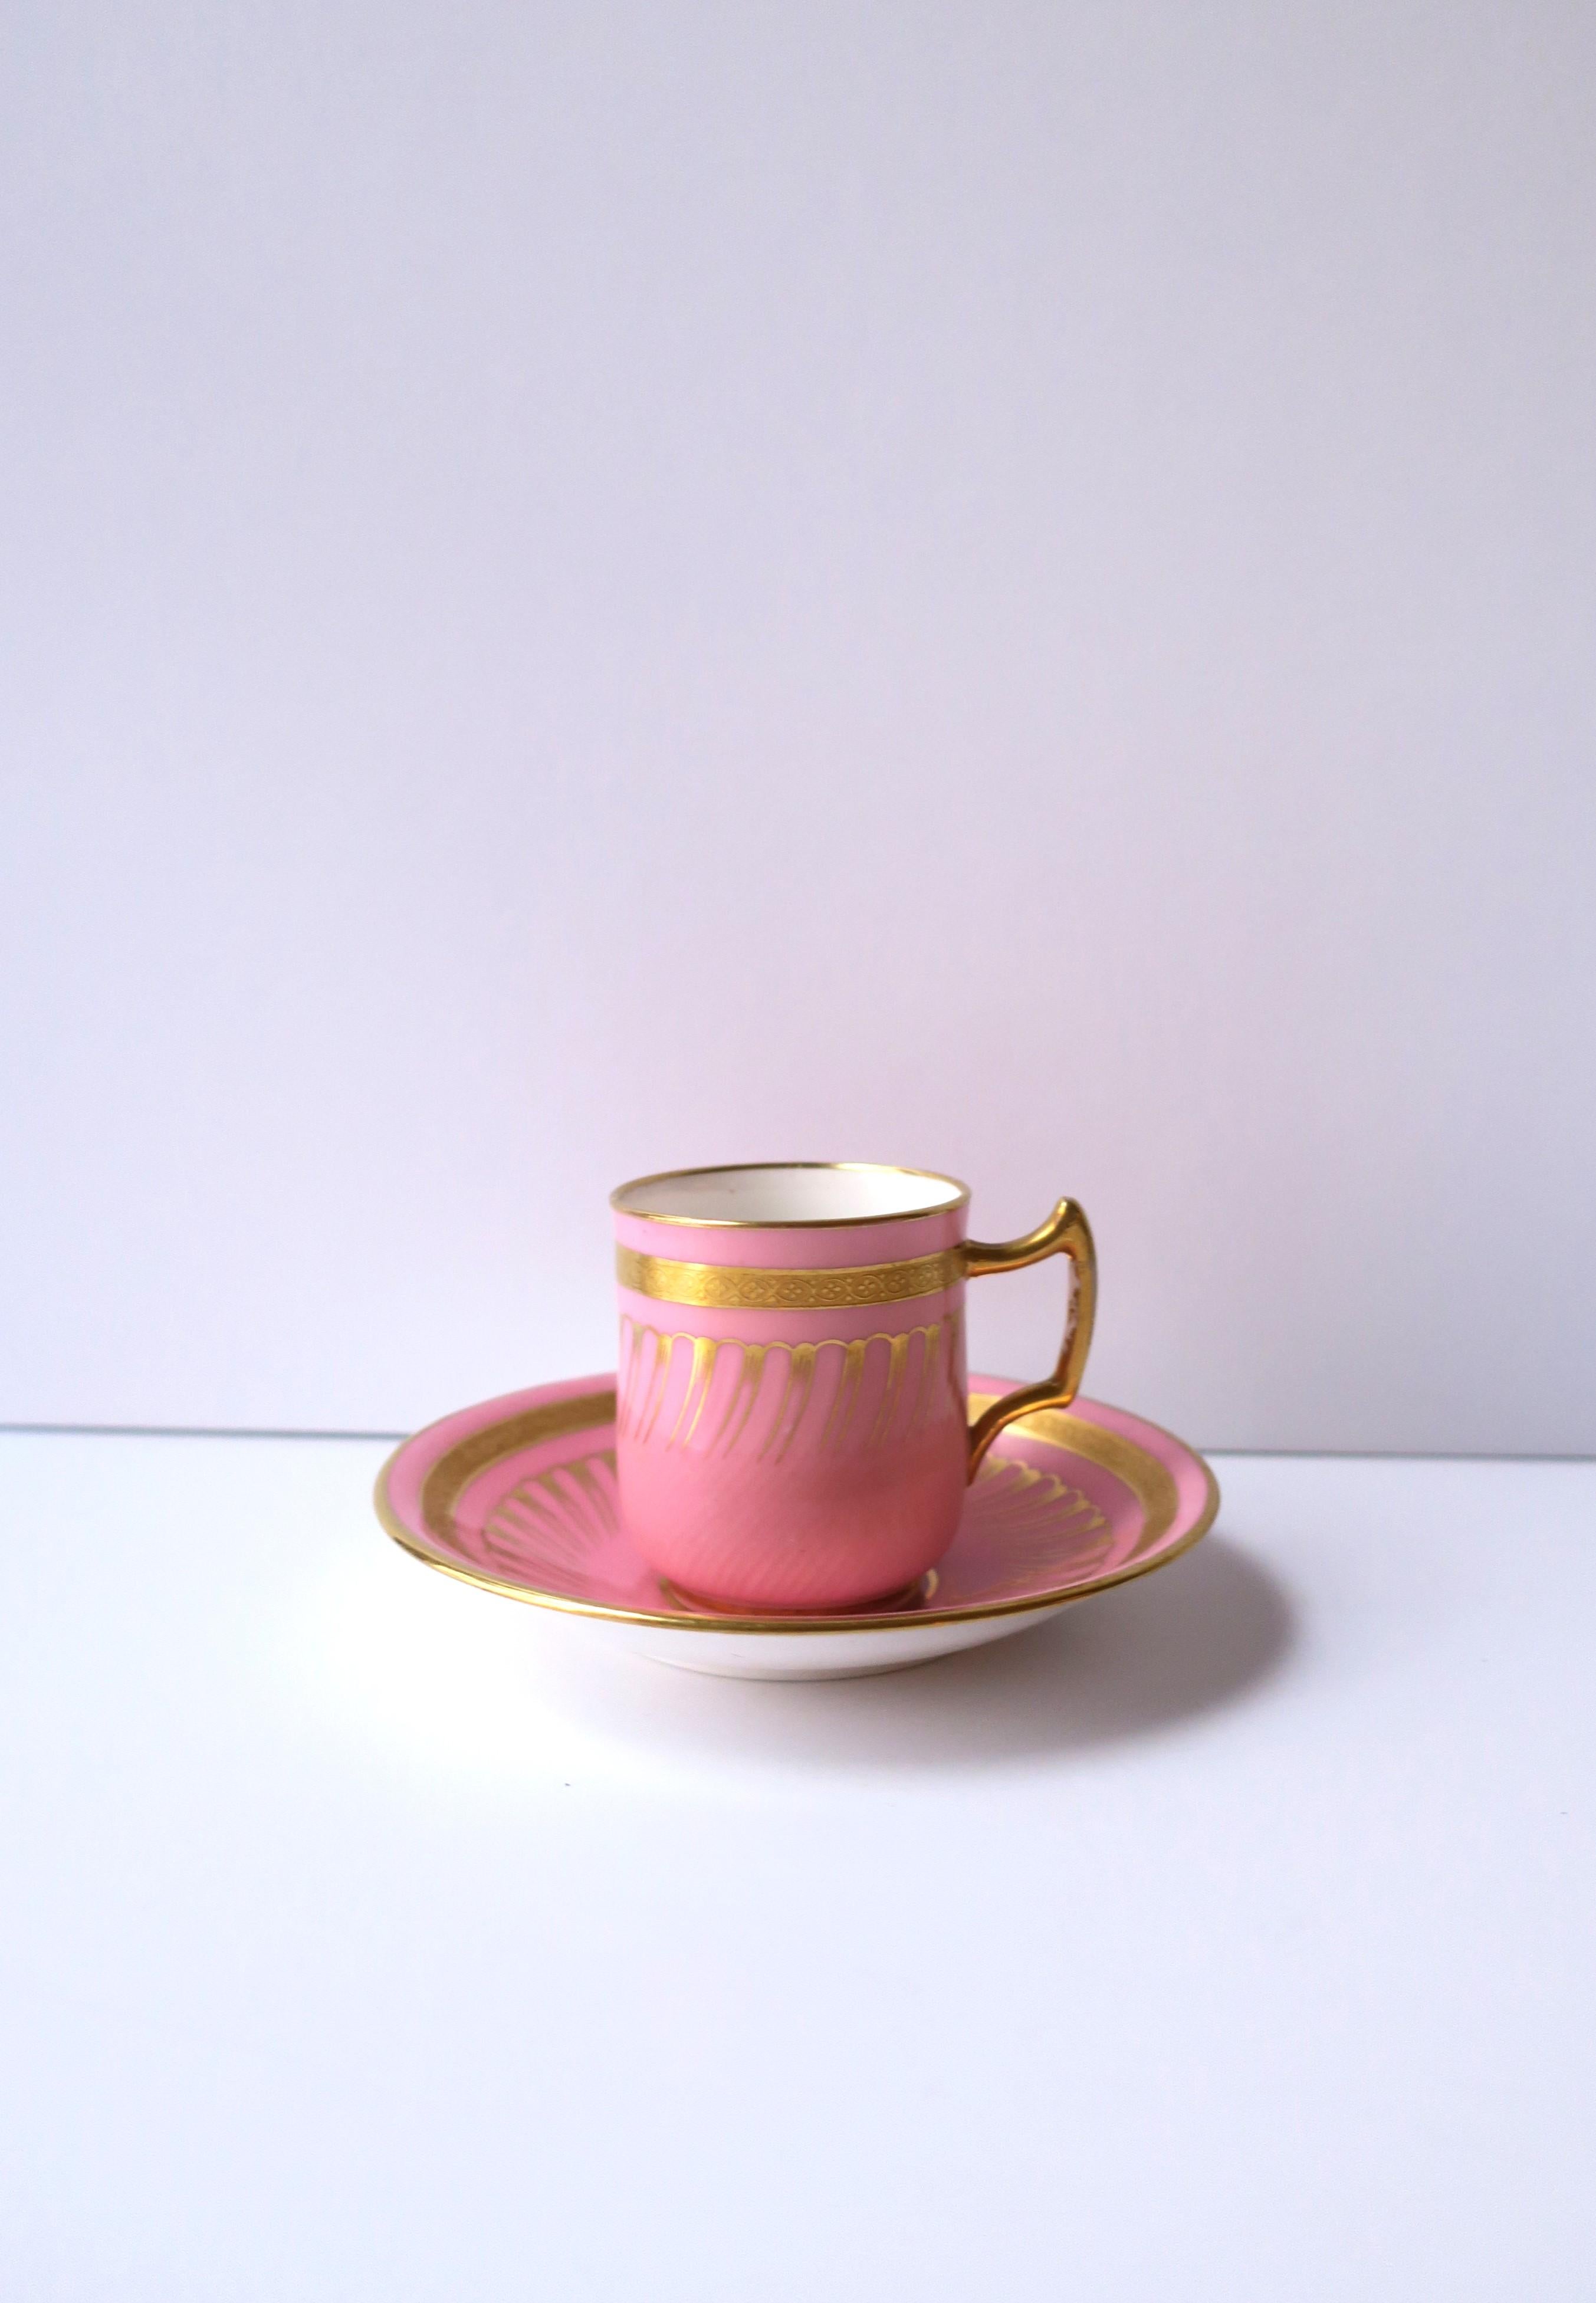 Eine sehr schöne und seltene antike englische rosa und goldene Porzellan Espressotasse und Untertasse von Minton ausdrücklich für Gilman Collamore & Co, New York, ca. Ende des 19. Die Rosa- und Goldtöne auf weißem Porzellan bilden eine schöne